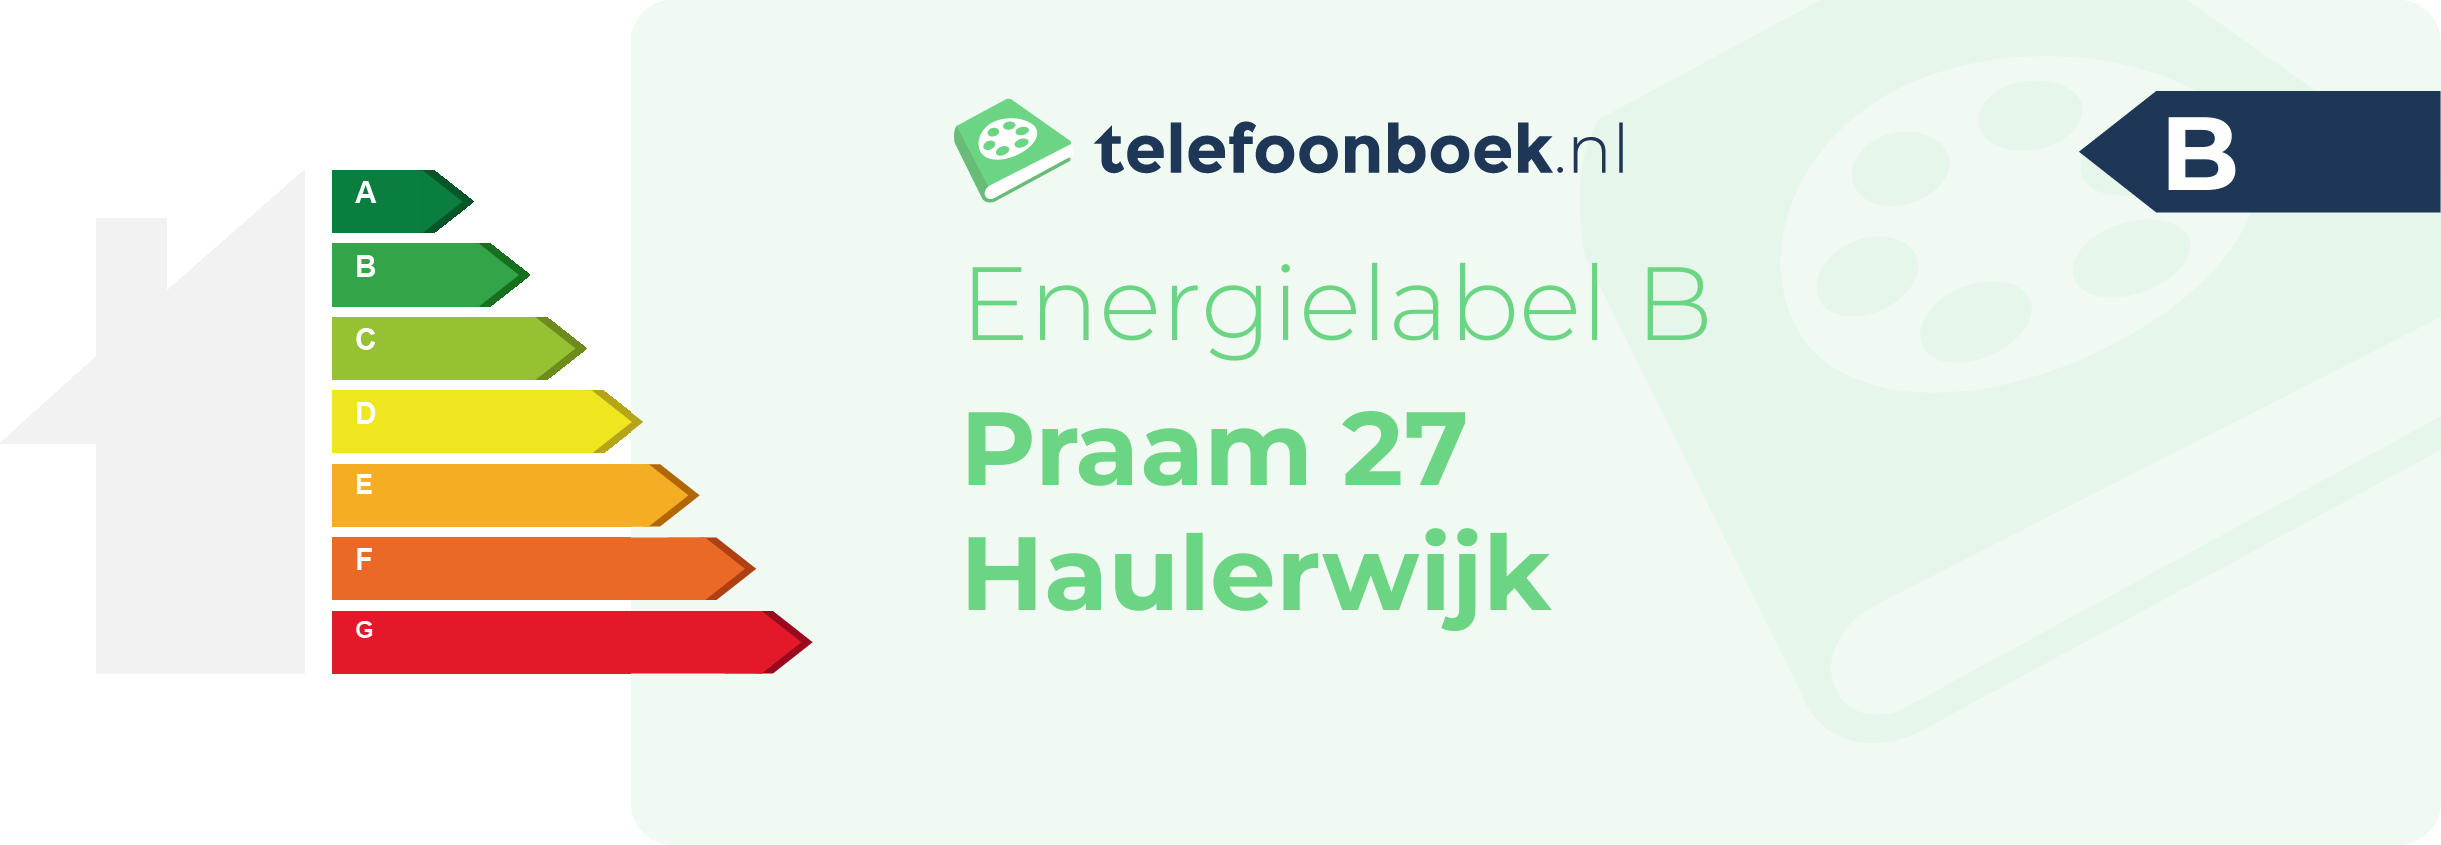 Energielabel Praam 27 Haulerwijk